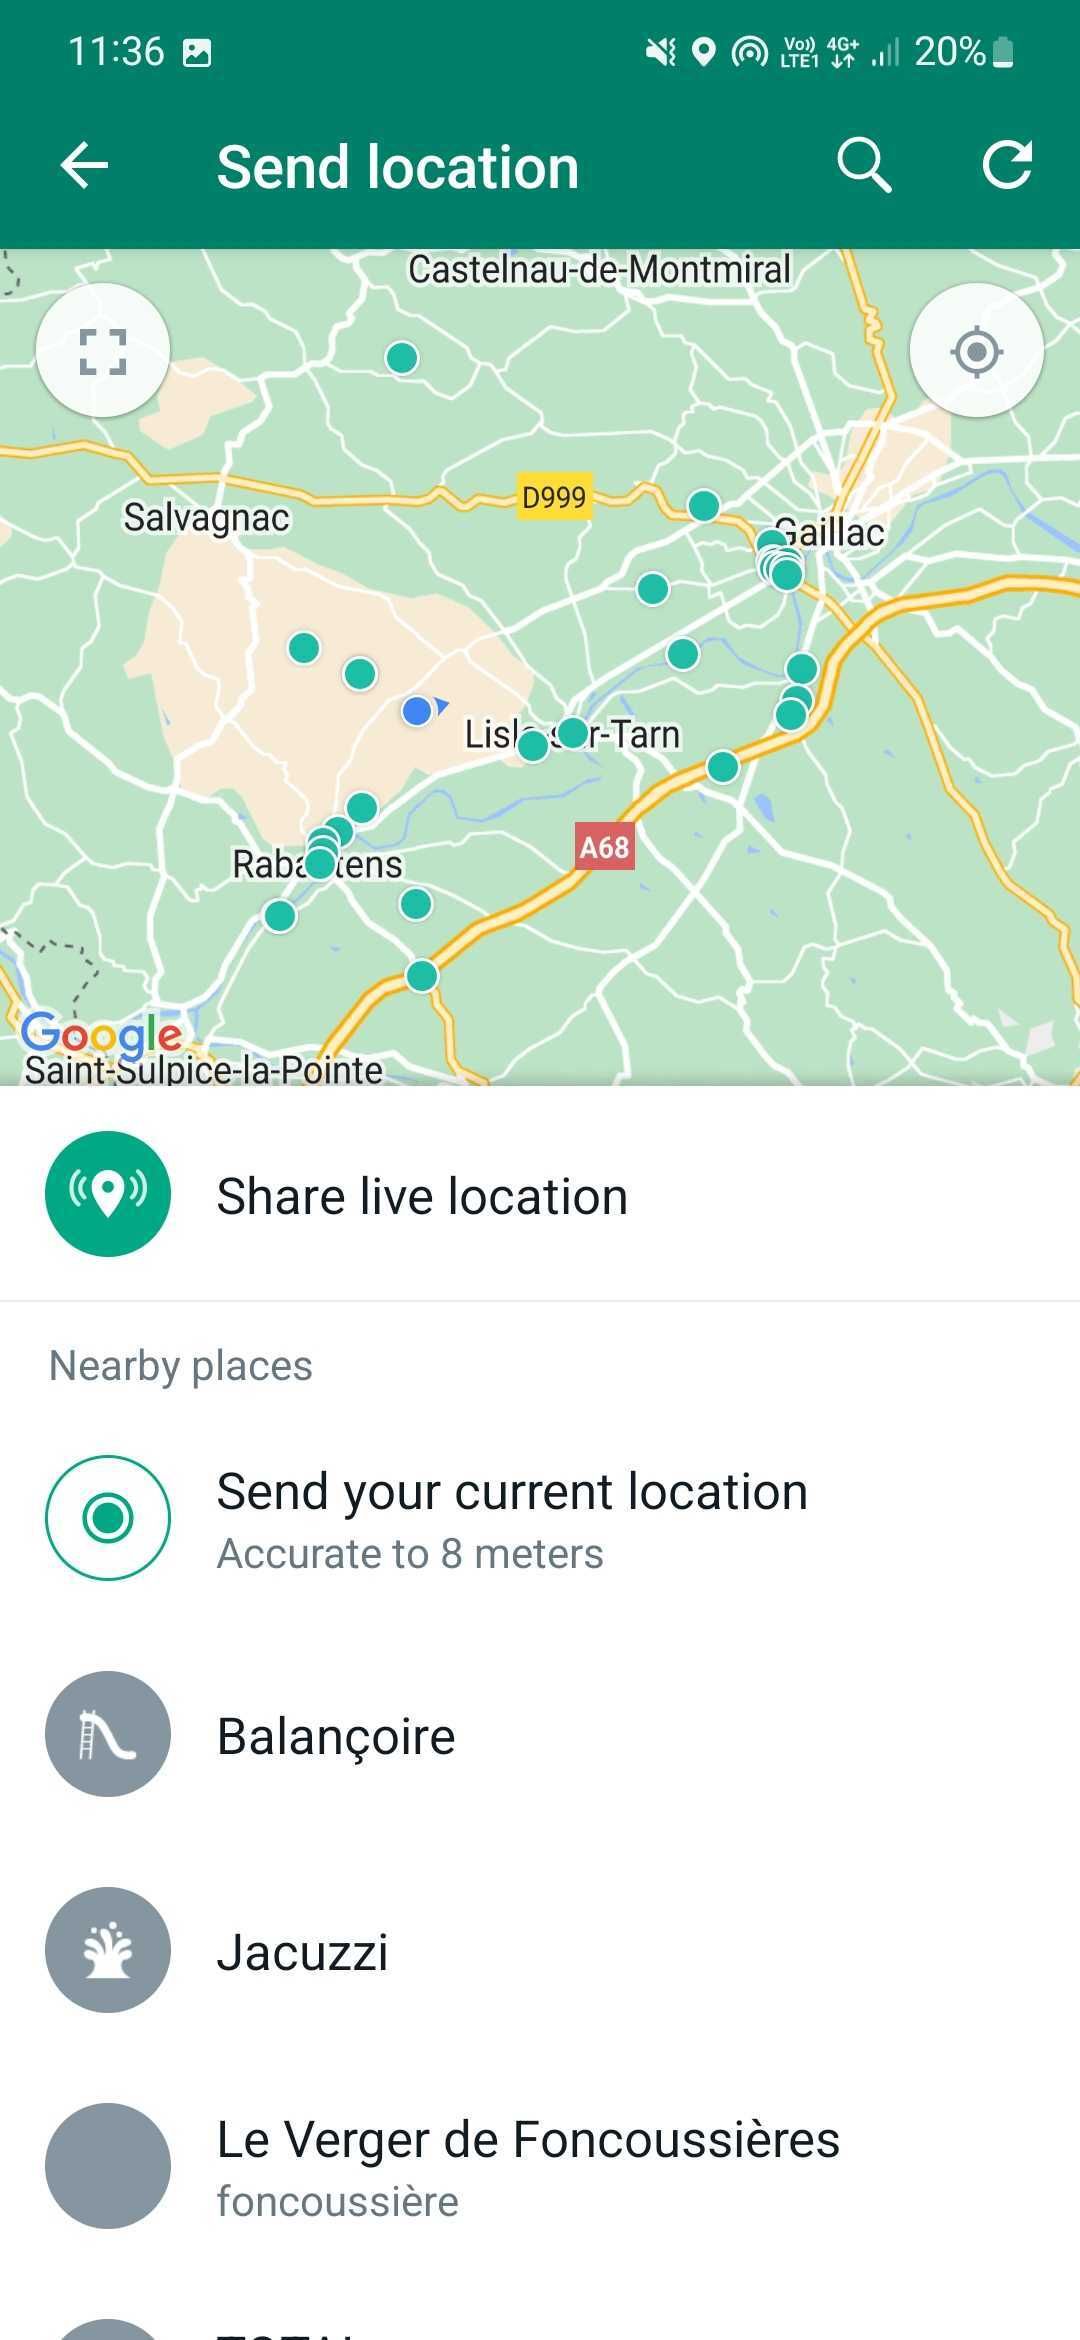 Captura de tela da tela de compartilhamento de localização do Whatsapp